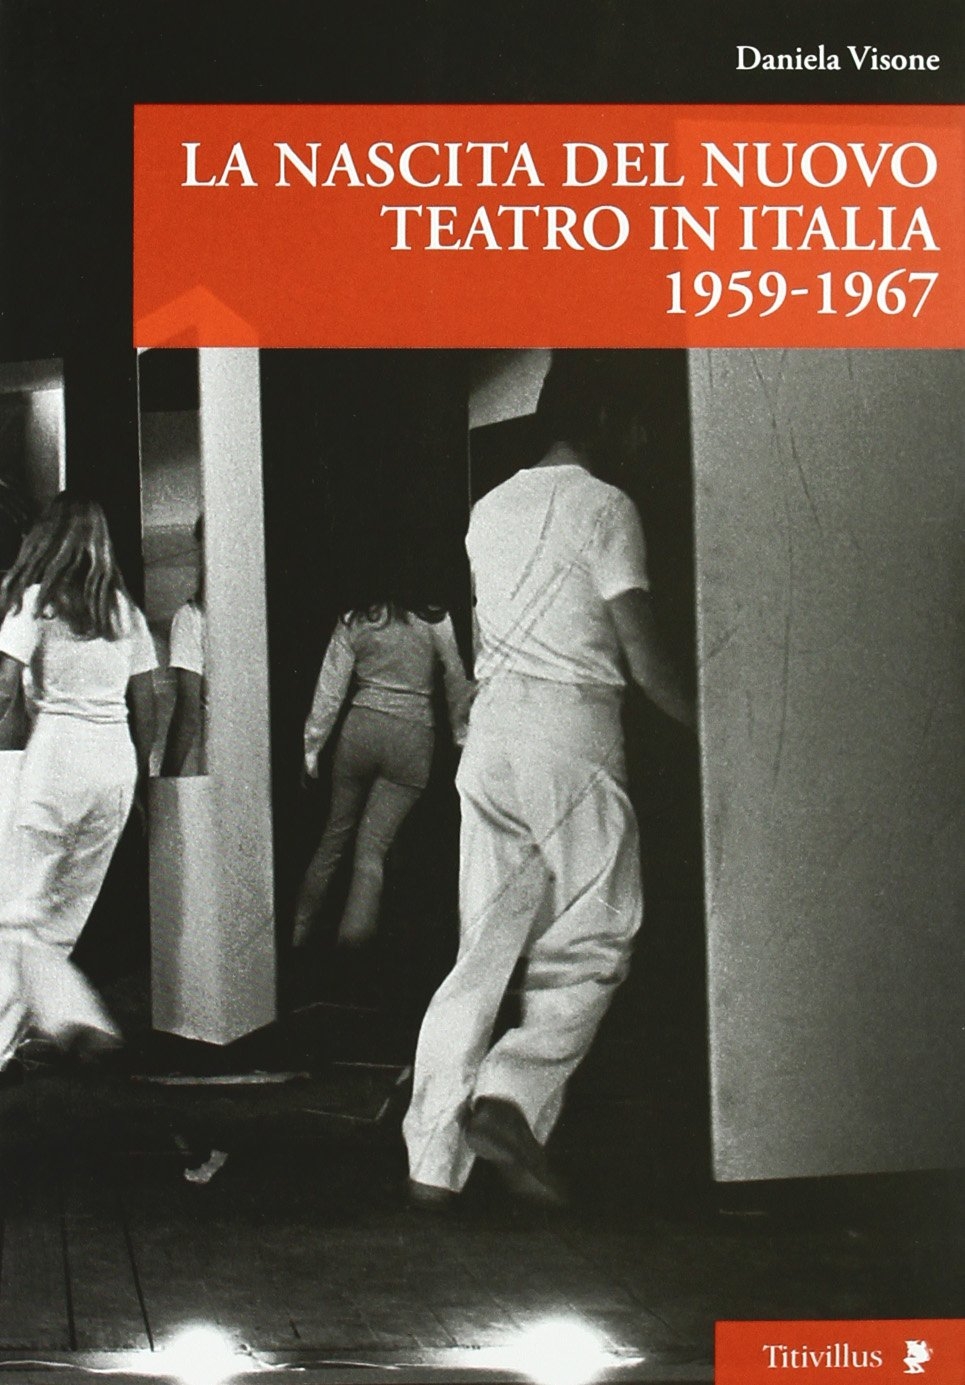 Libri Daniela Visone - La Nascita Del Nuovo Teatro In Italia 1956-1967 NUOVO SIGILLATO, EDIZIONE DEL 17/01/2011 SUBITO DISPONIBILE